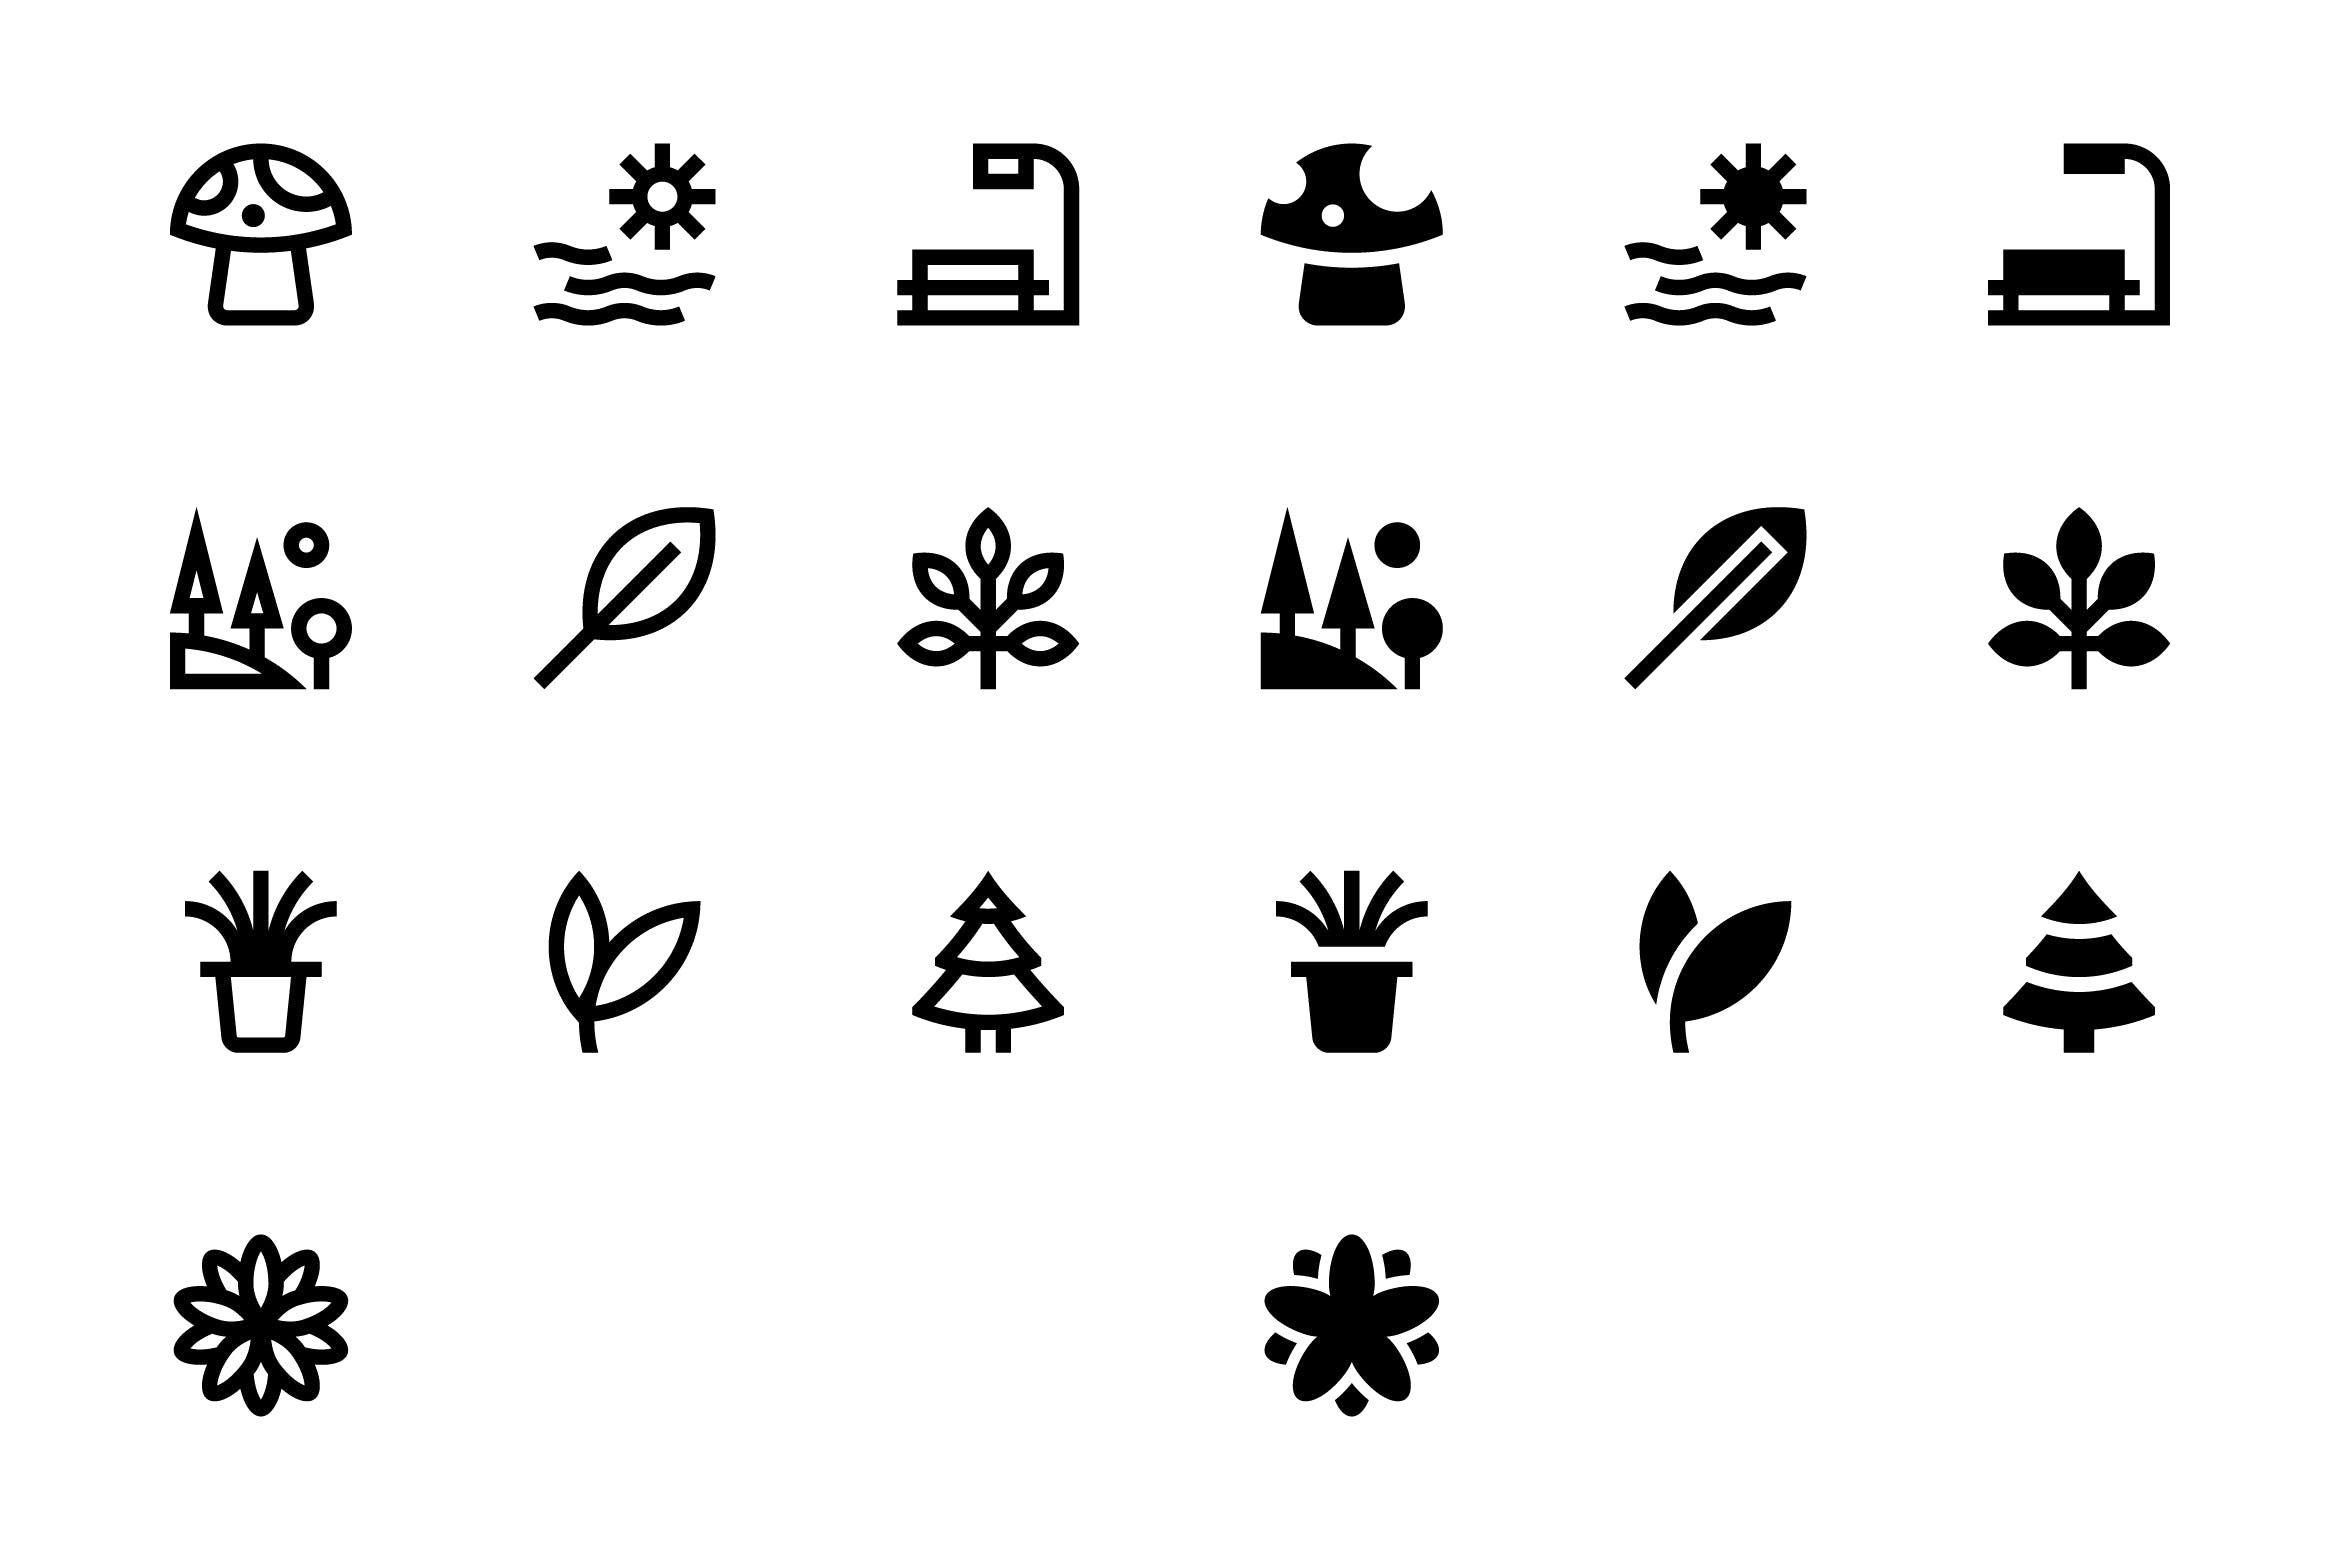 20枚自然主题SVG矢量第一素材精选图标#3 20 Nature Icons #3插图